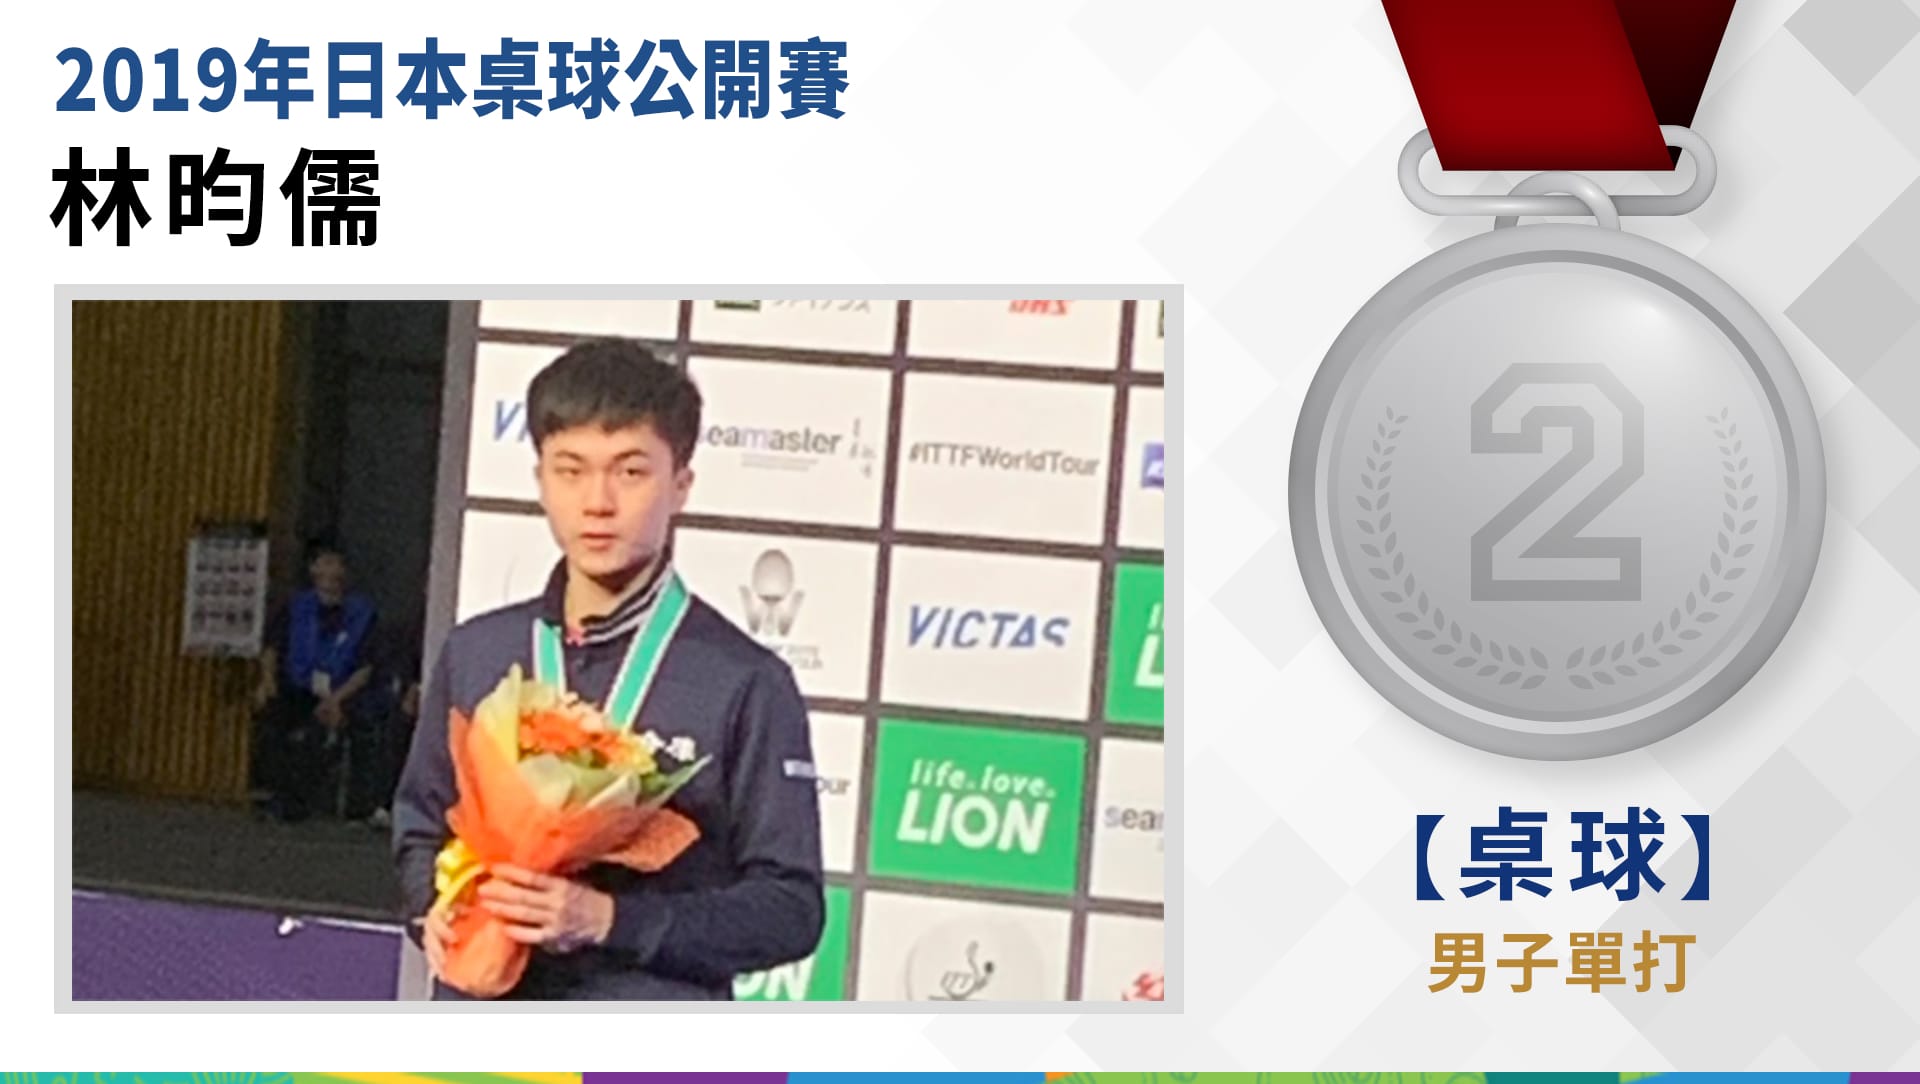 林昀儒 - 桌球男子單打 銀牌